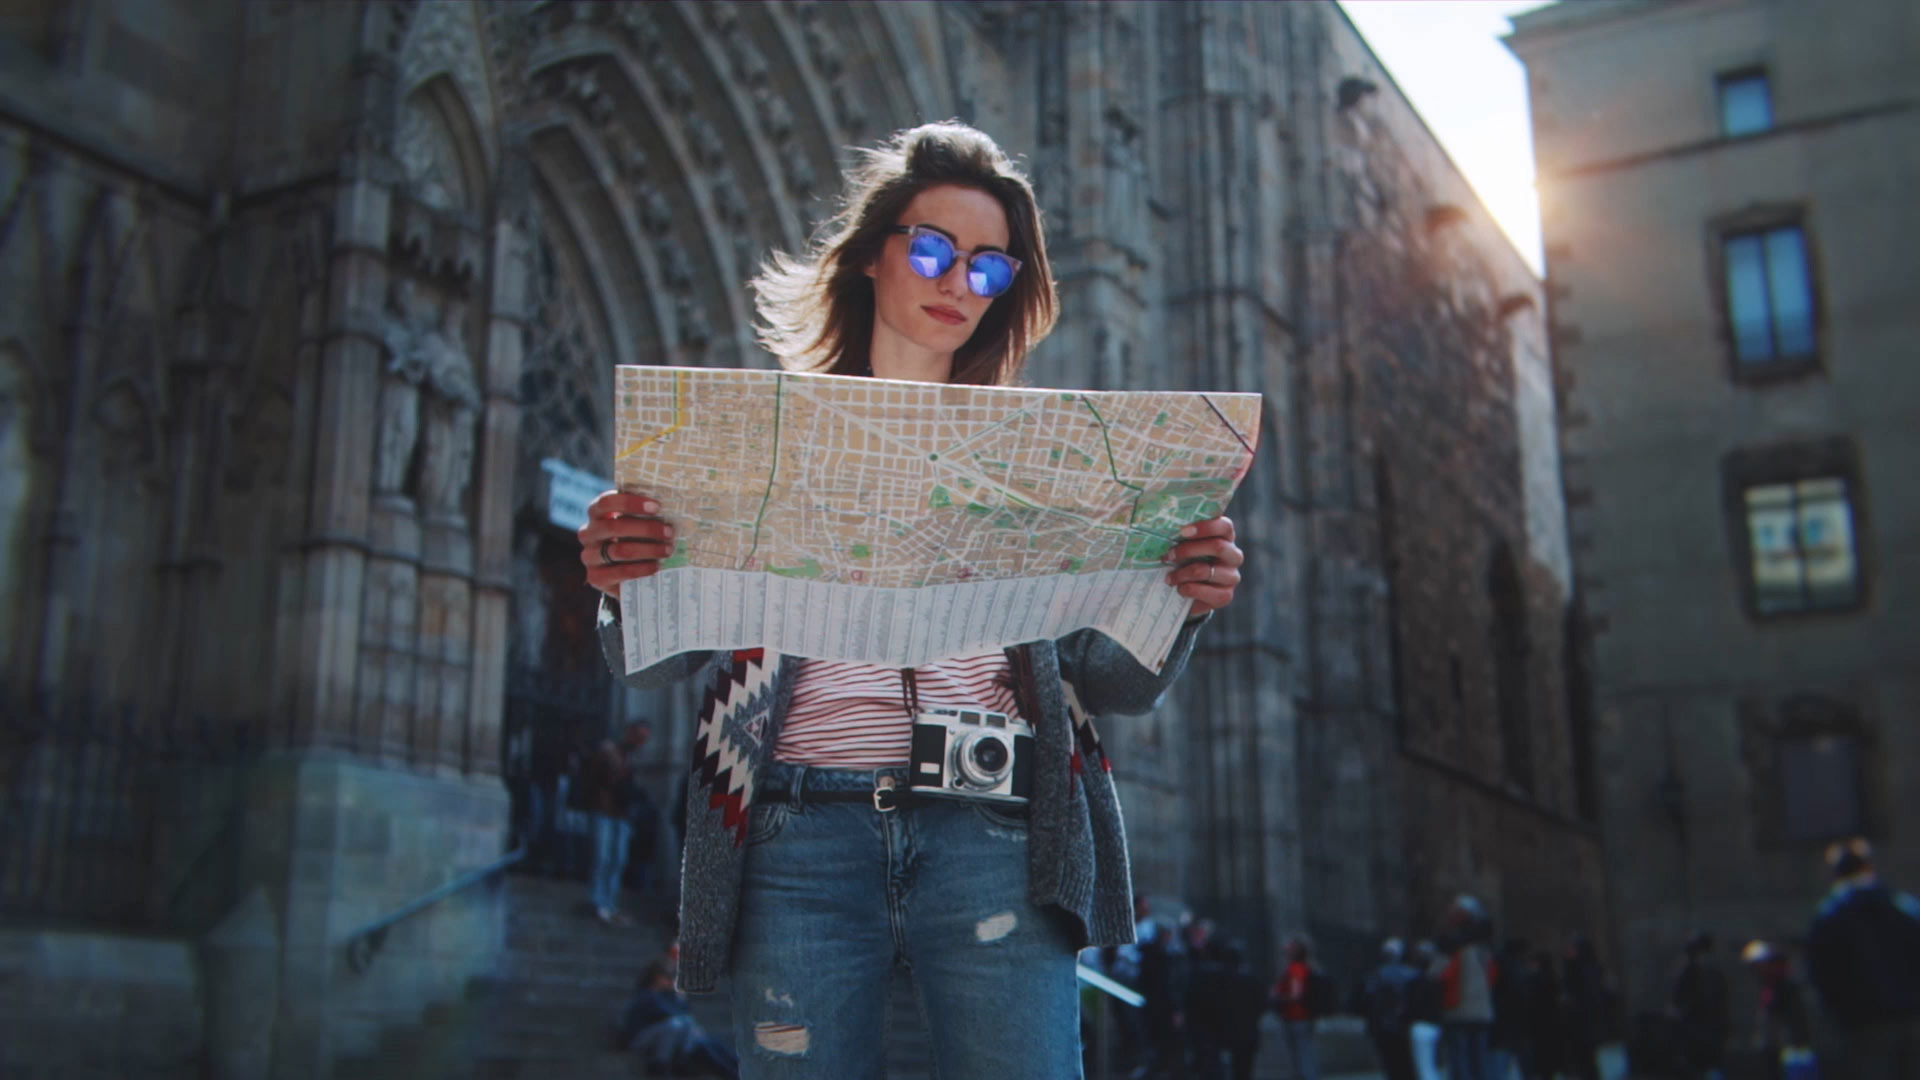 Touriste à Barcelone regardant une carte avec la cathédrale de Barcelone en arrière-plan.